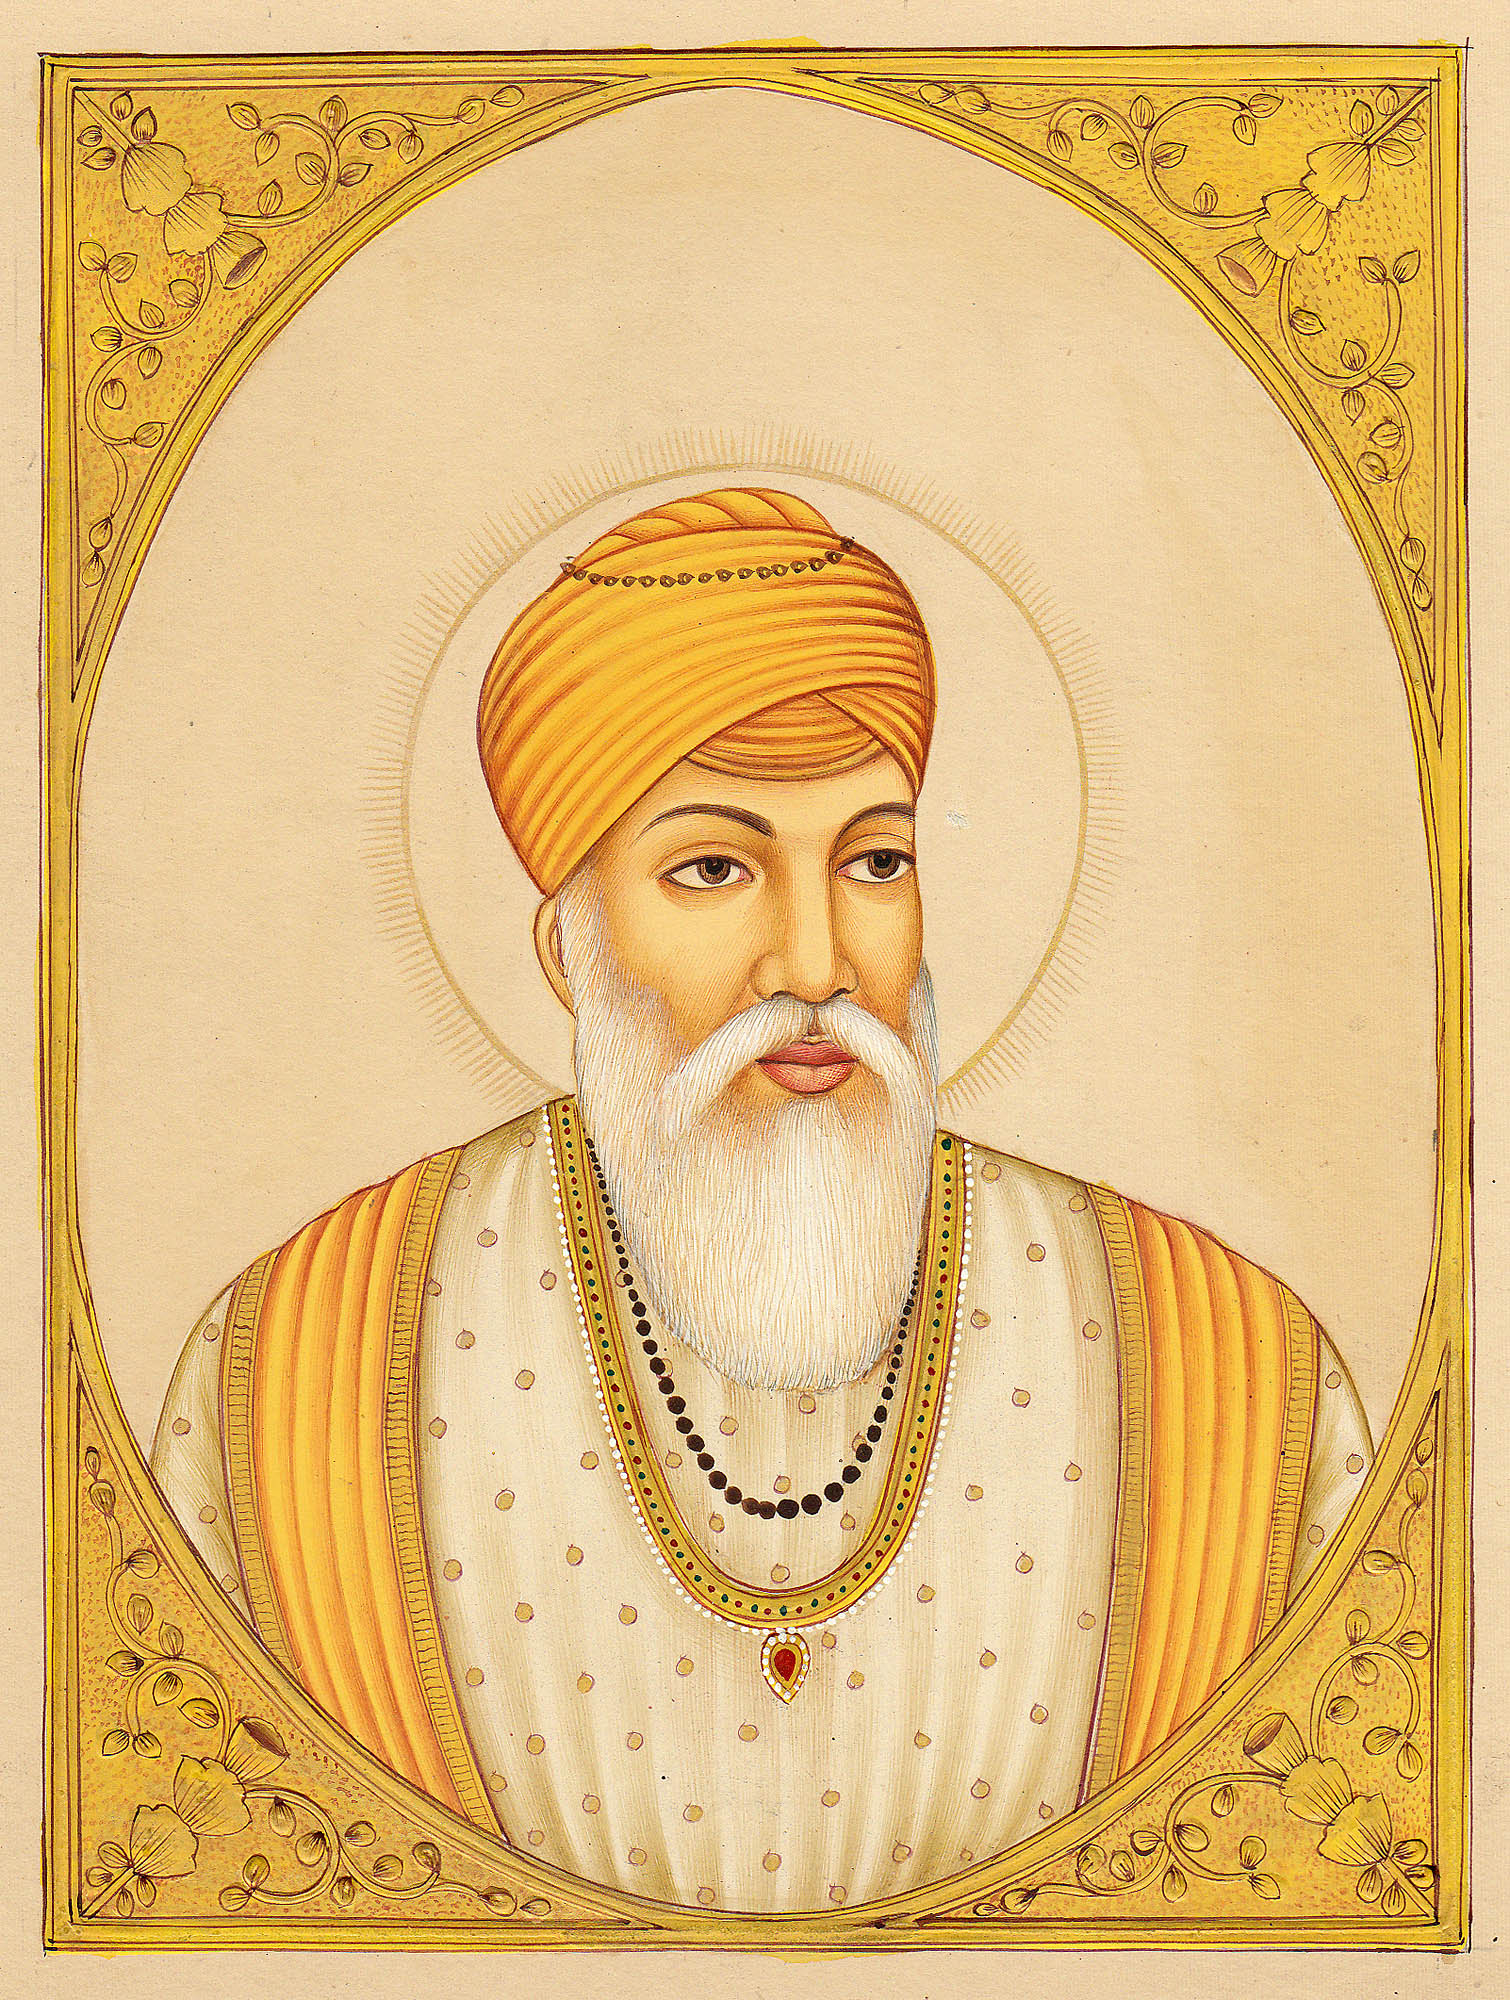 Sri Guru Amar Das Sahib Ji (3rd Sikh Guru) | Discover Sikhism